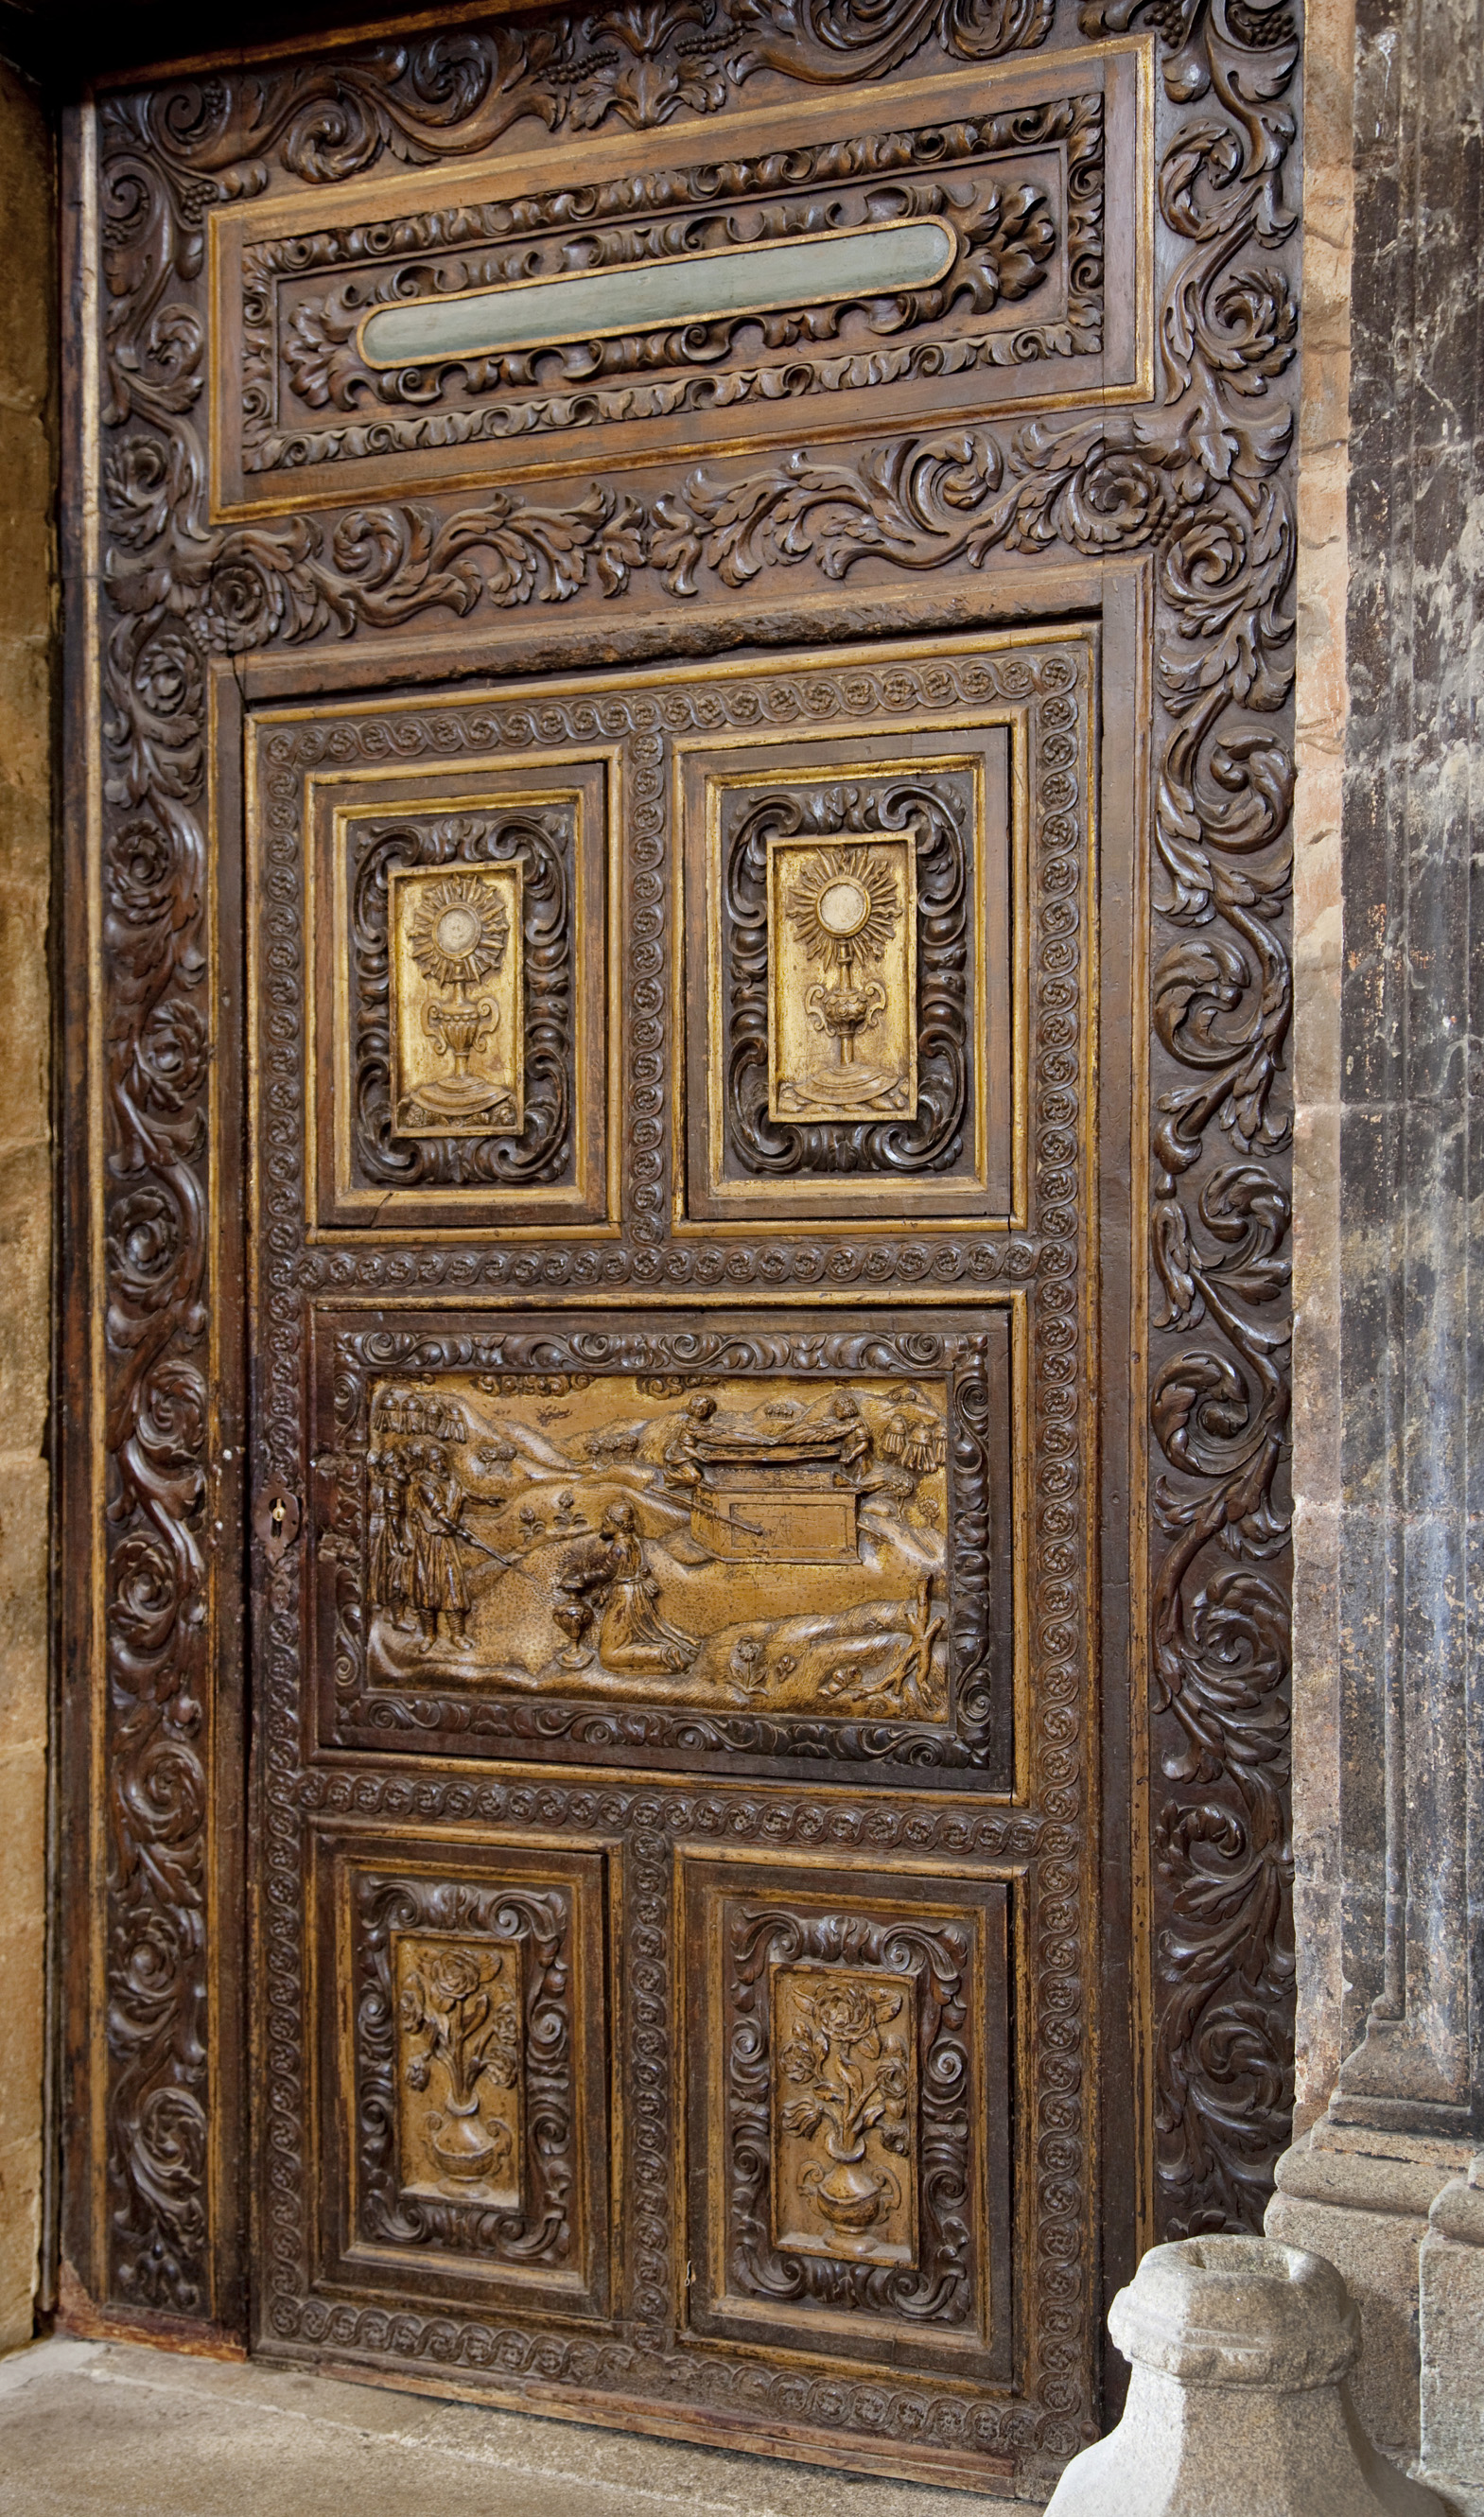 Detalle da porta da sancristía de Lugo